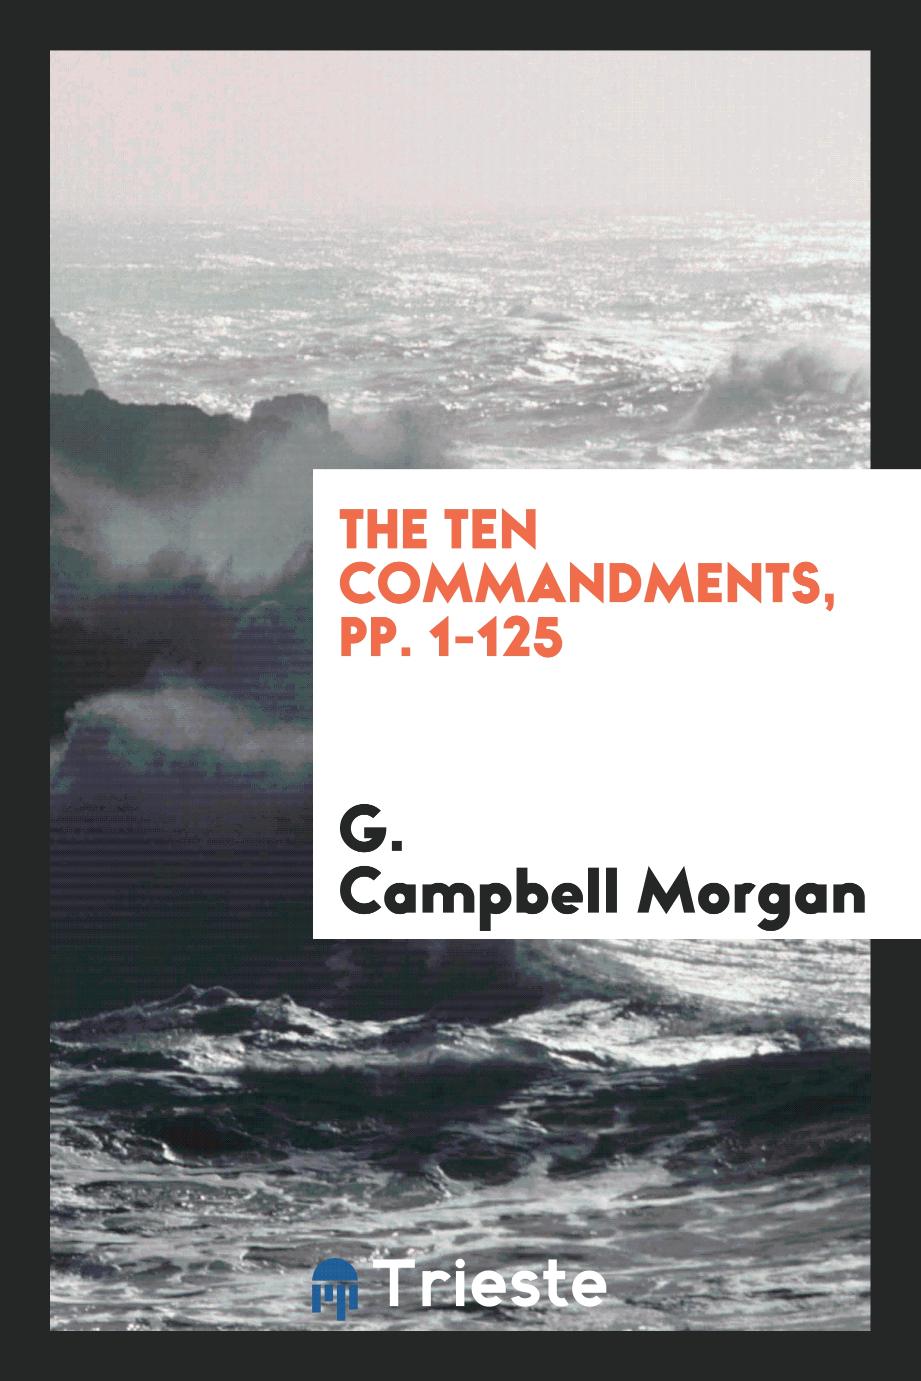 The Ten Commandments, pp. 1-125